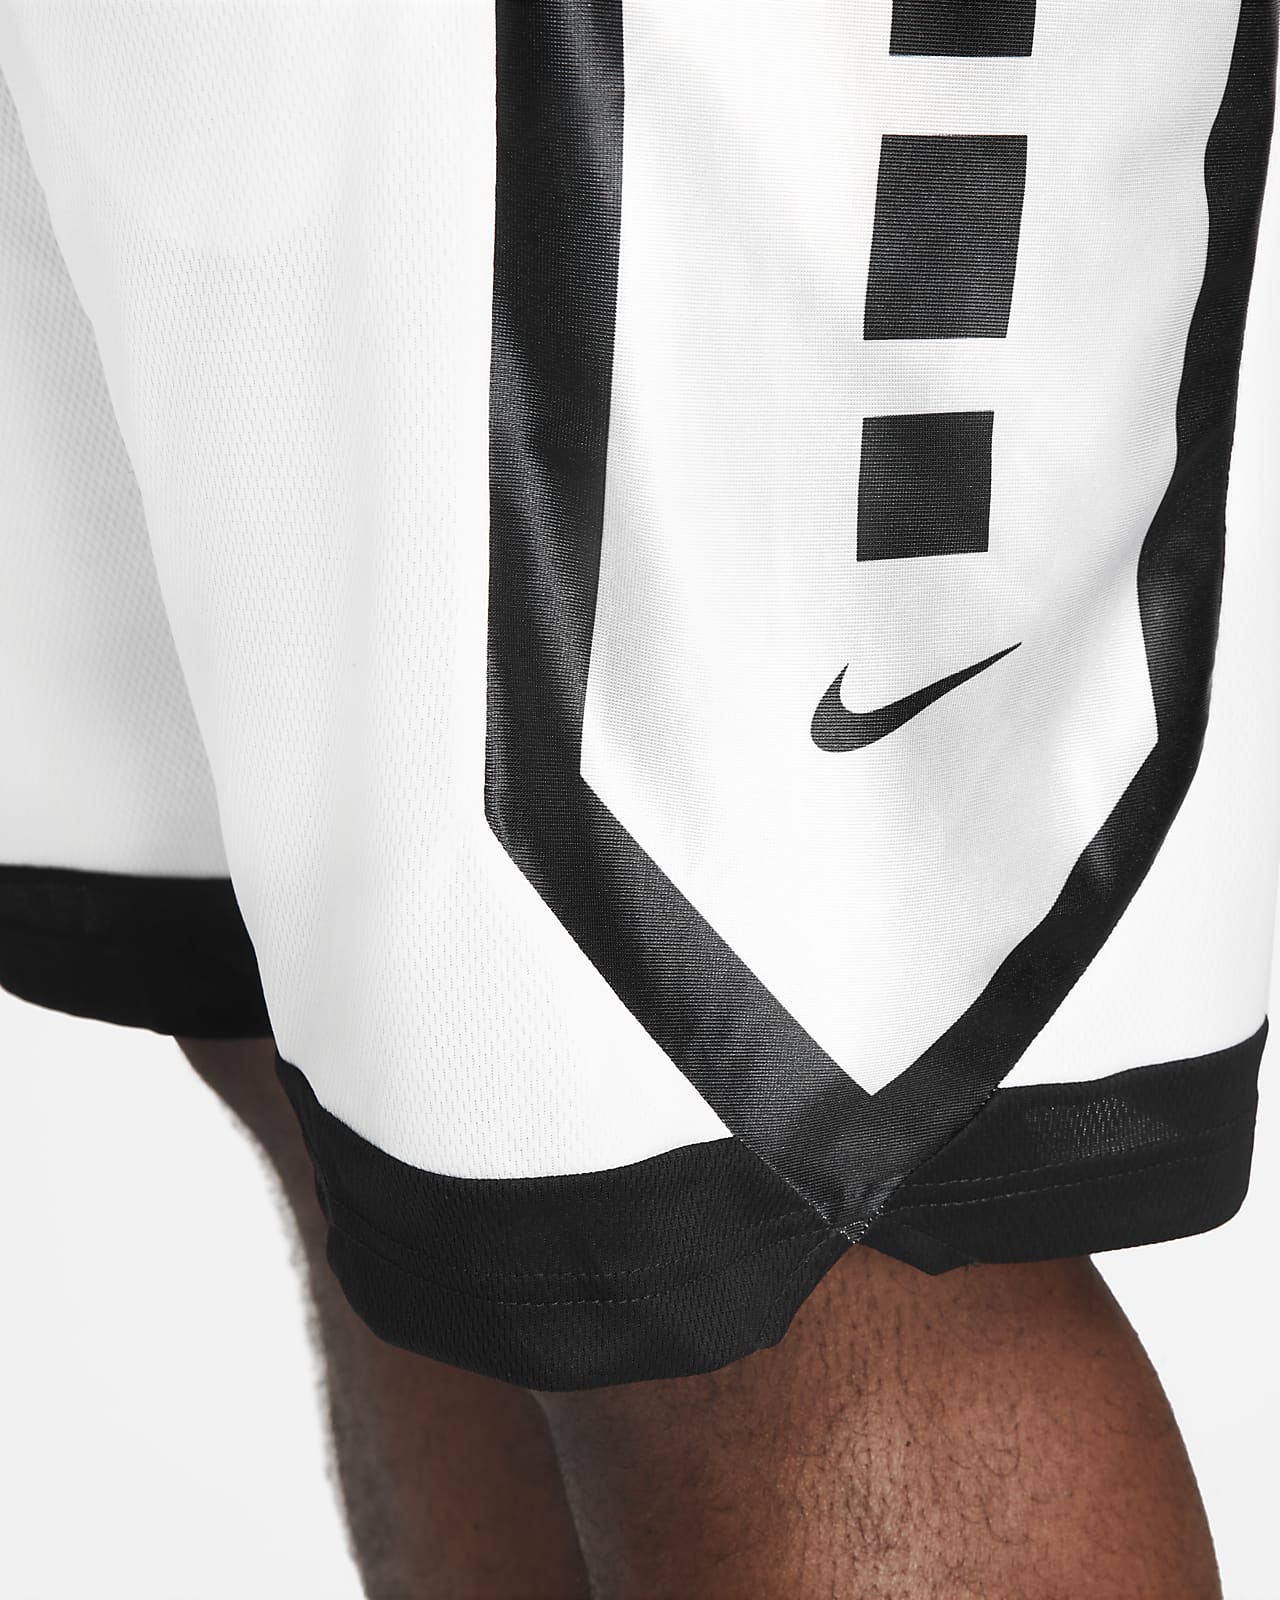 Nike Dri-FIT Elite Men's Basketball Shorts. Nike BG